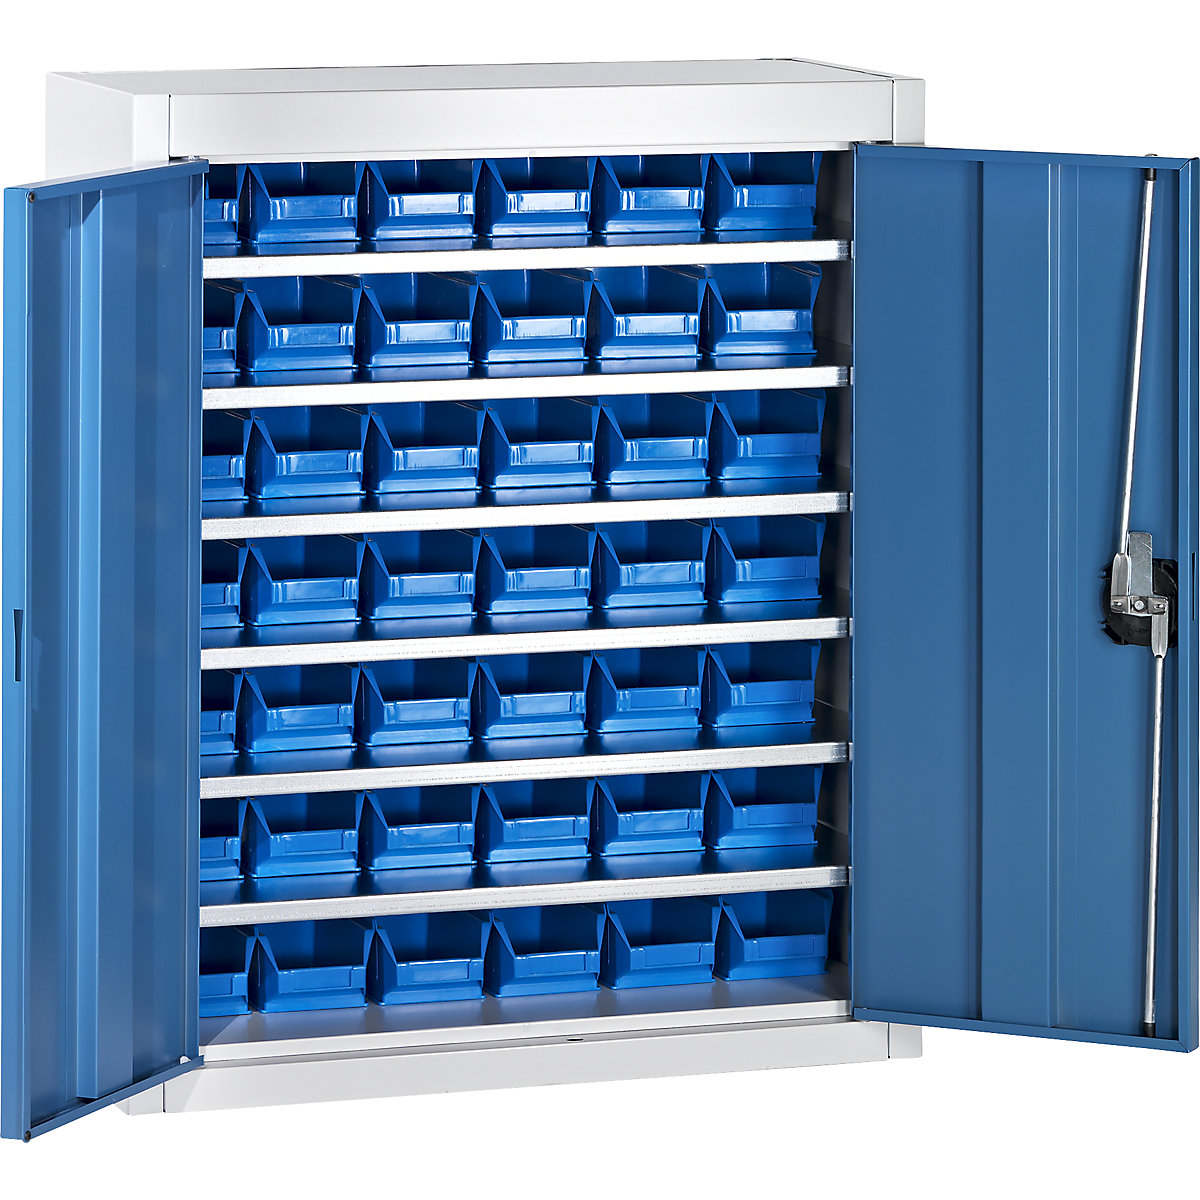 Skladová skříň s přepravkami s viditelným obsahem – mauser, v x š x h 820 x 680 x 280 mm, dvoubarevné, korpus šedý, dveře modré, 42 přepravek, od 3 ks-3